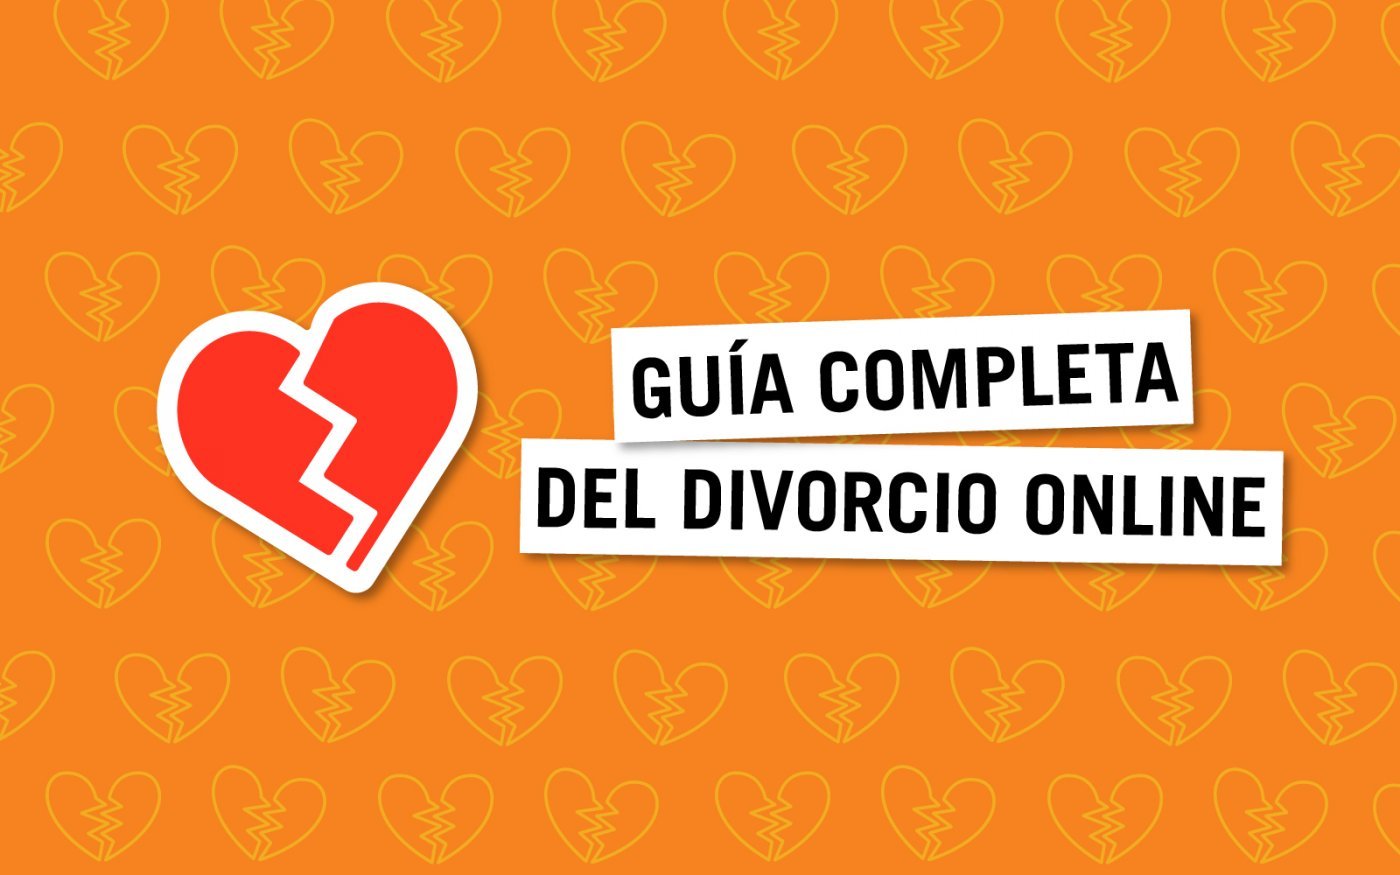 Funeral Trueno comprar Divorcio online: la guía definitva para divorciarte por Internet | Bloygo